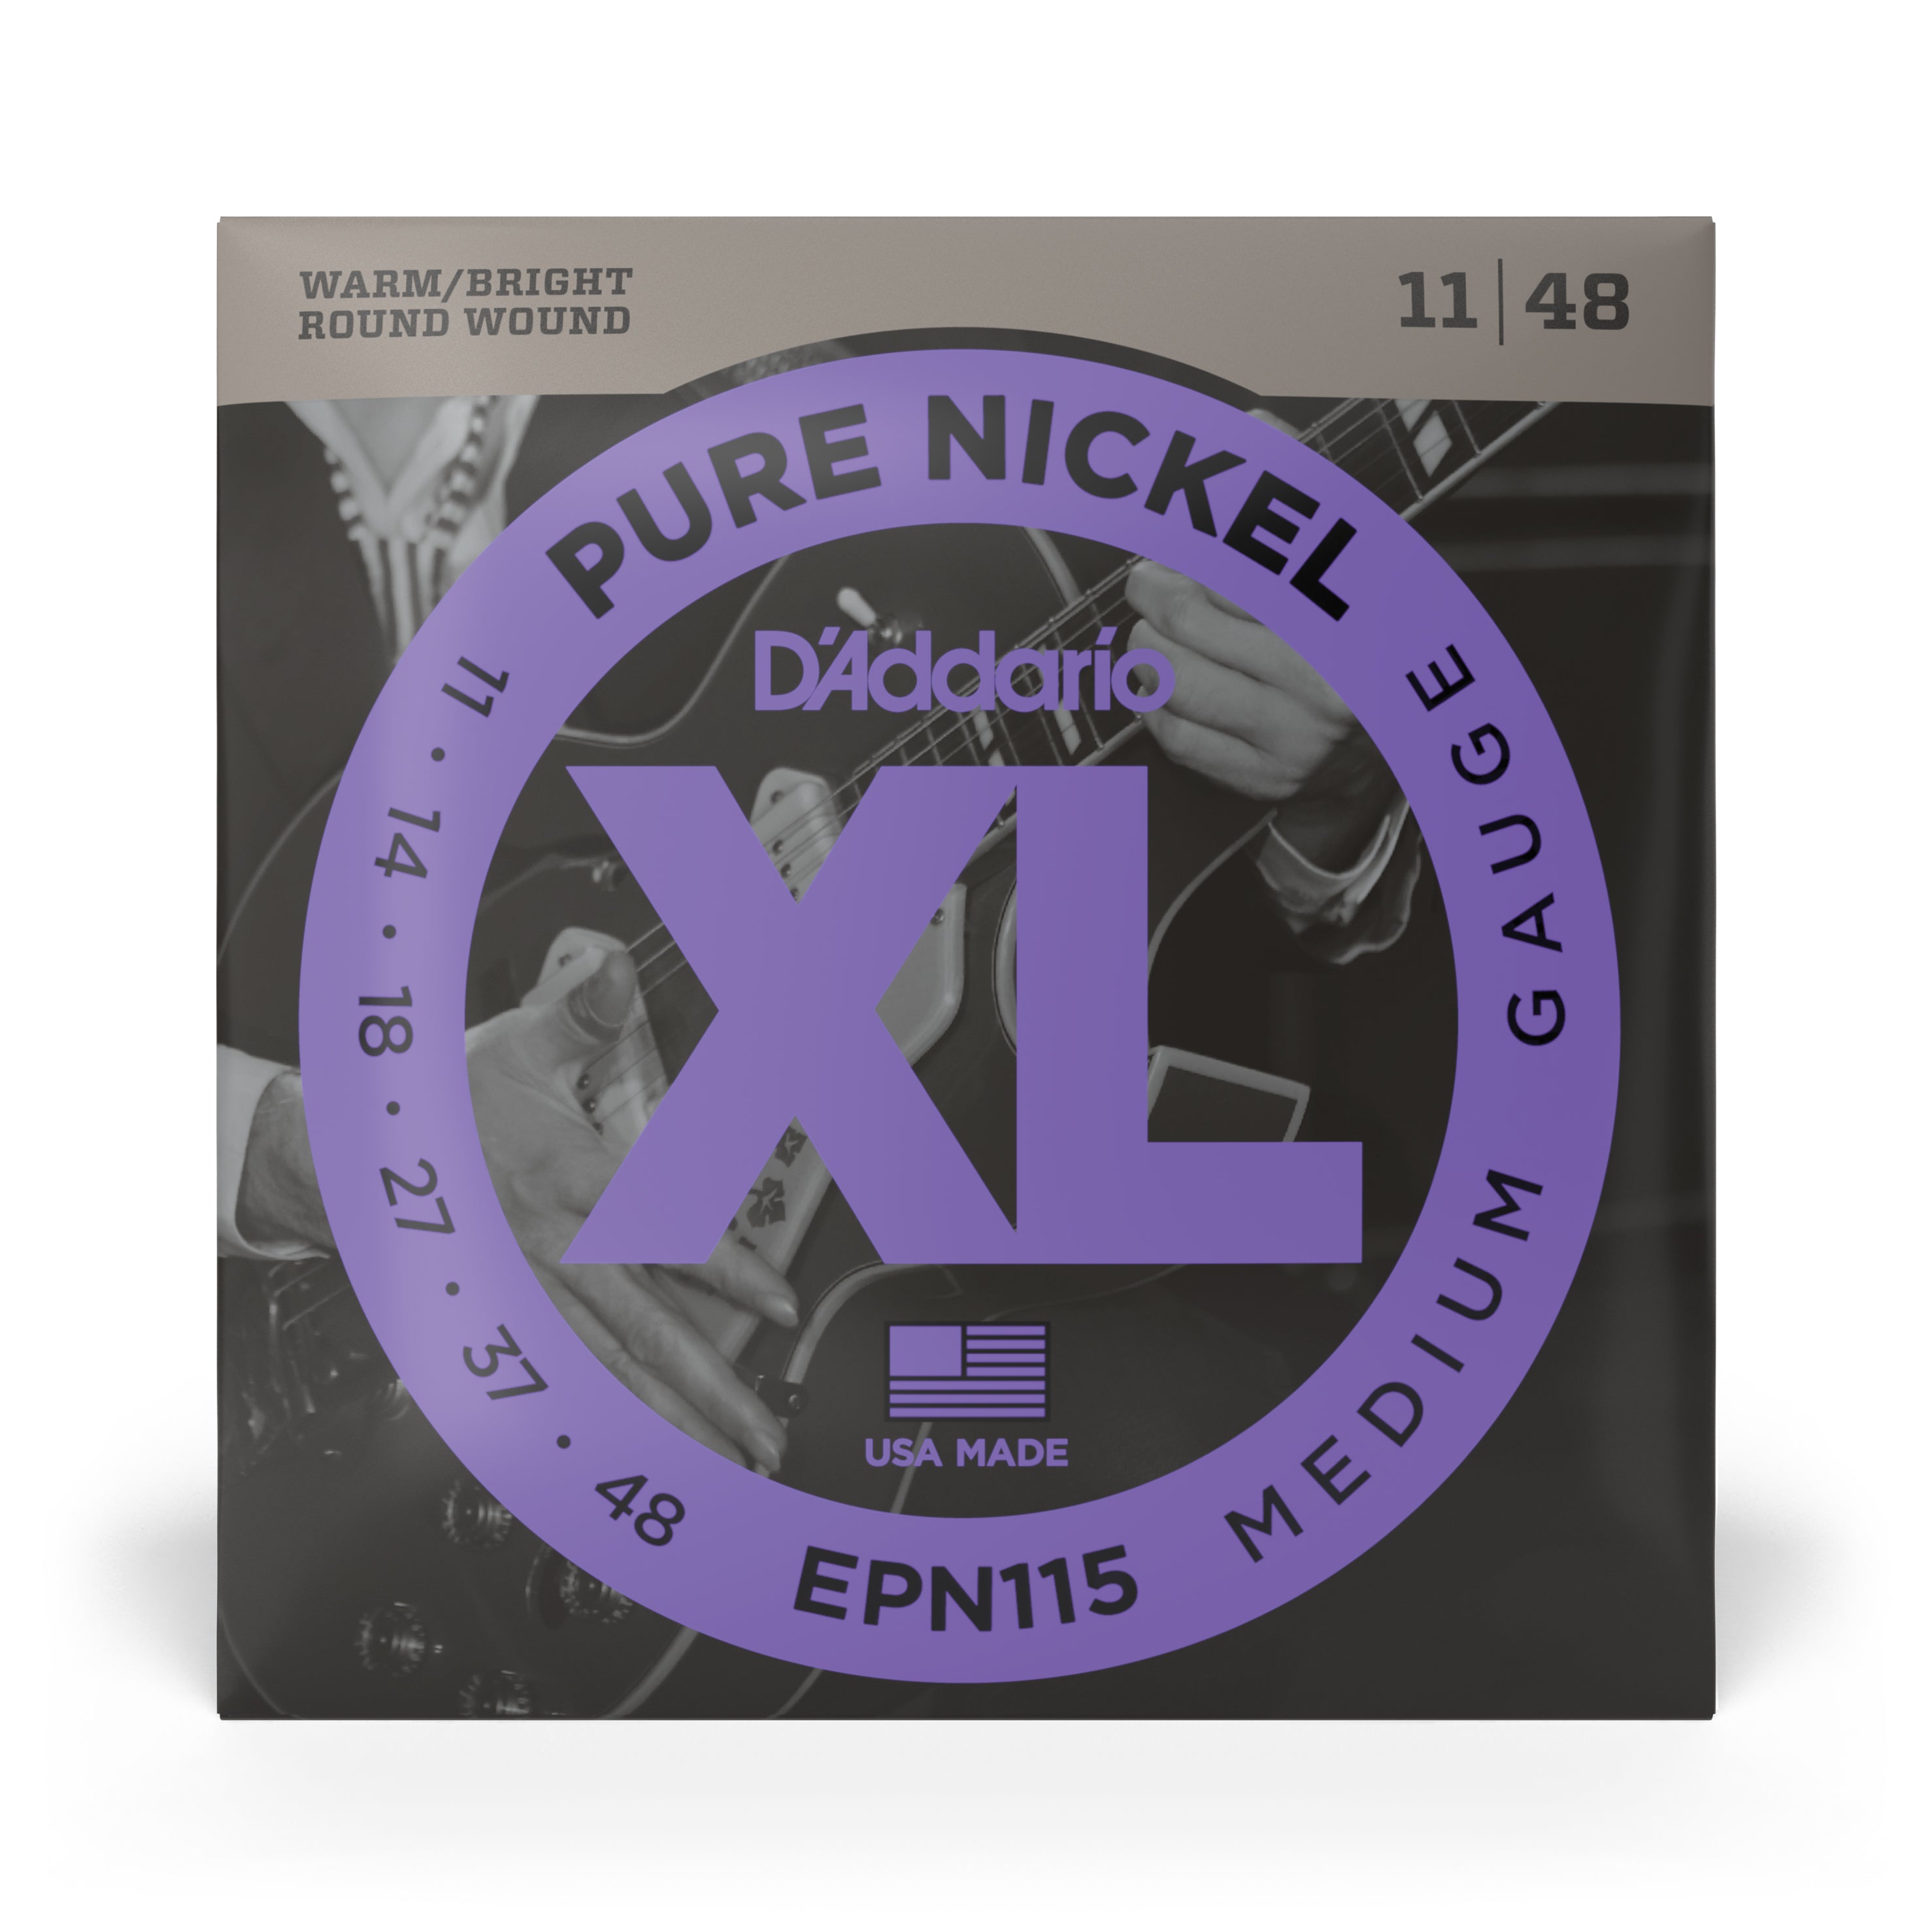 D'Addario Pure Nickel 11-48 Electric Guitar Strings, Jazz Rock